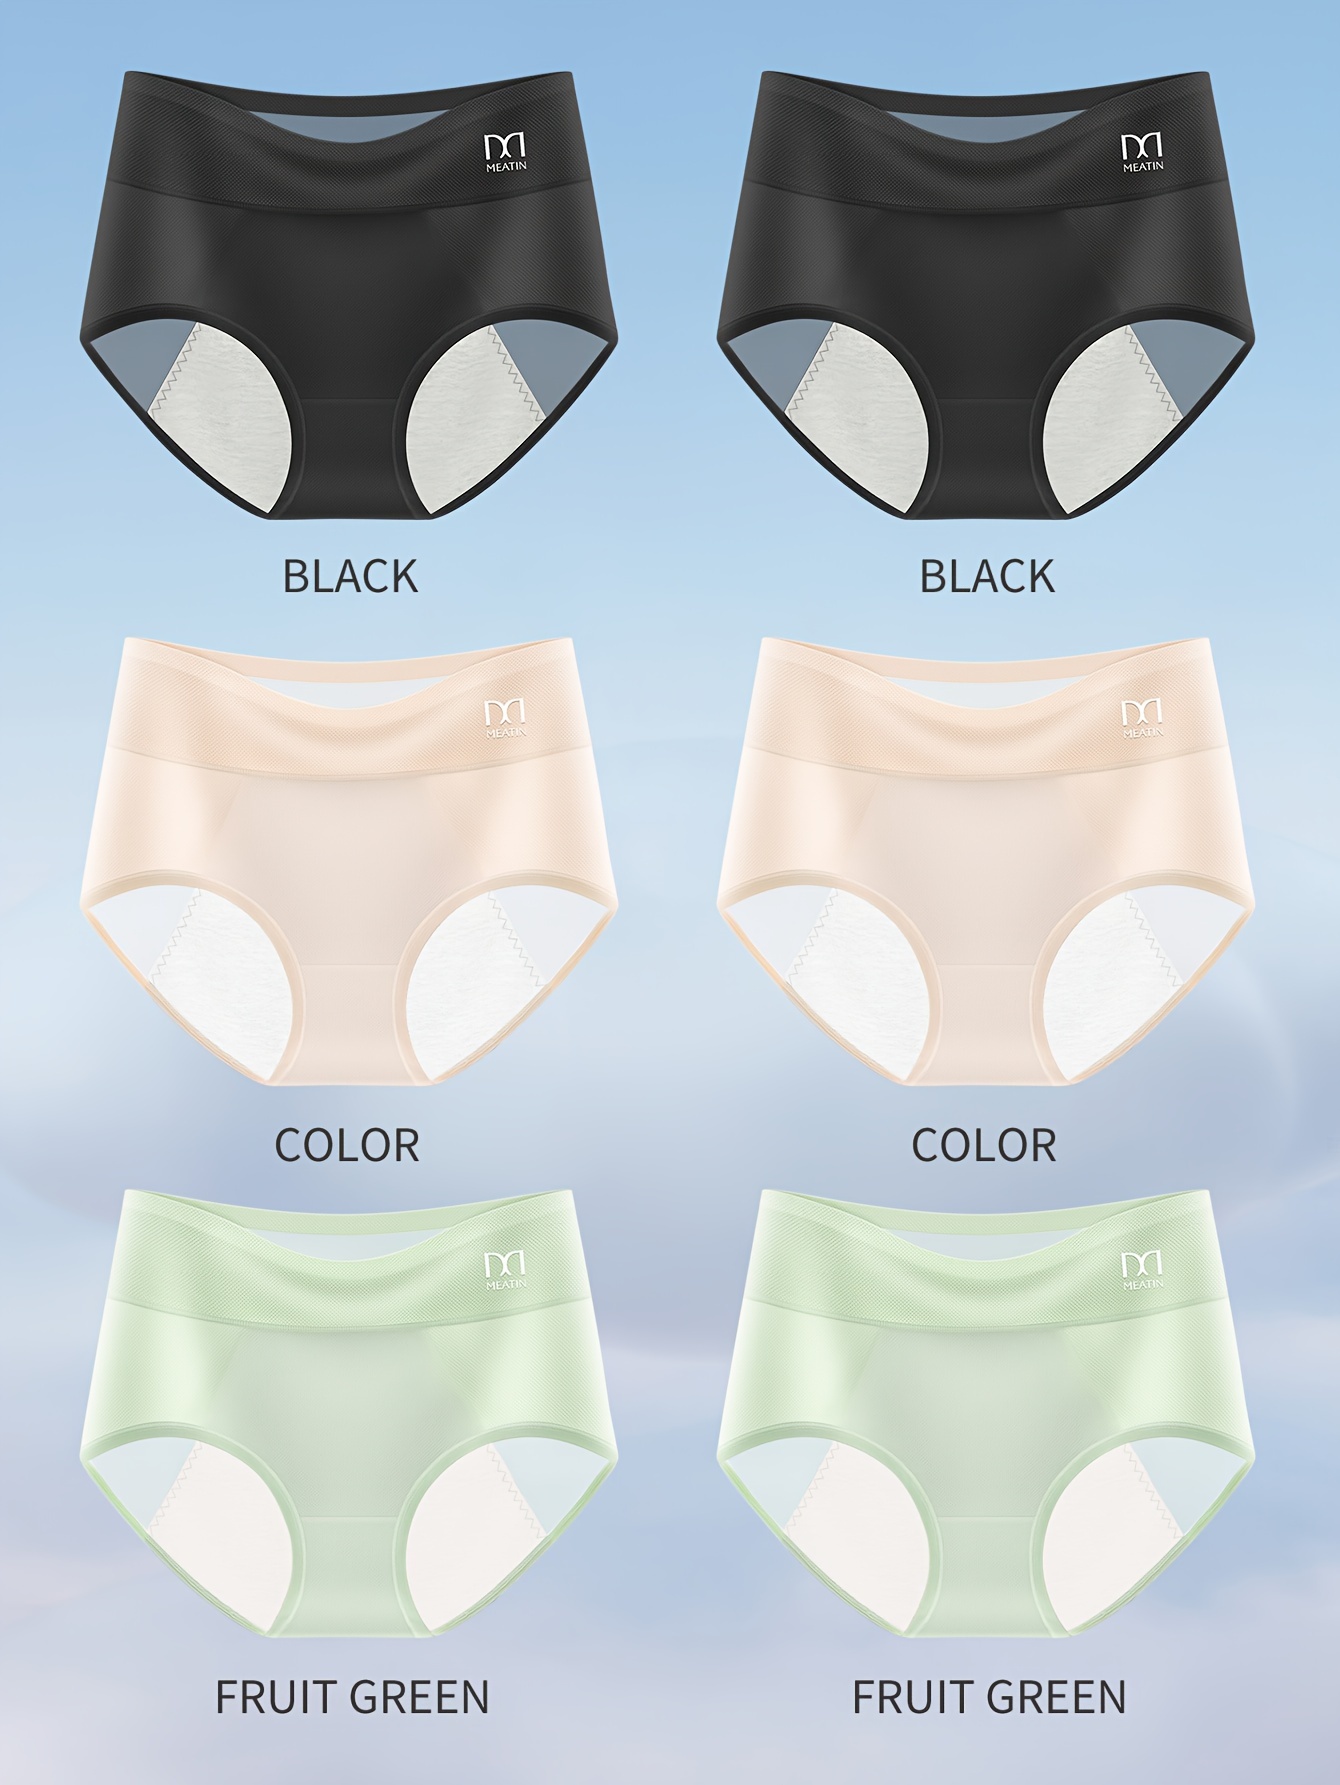 Breezies - Women's Underwear Size 11 - Panties 